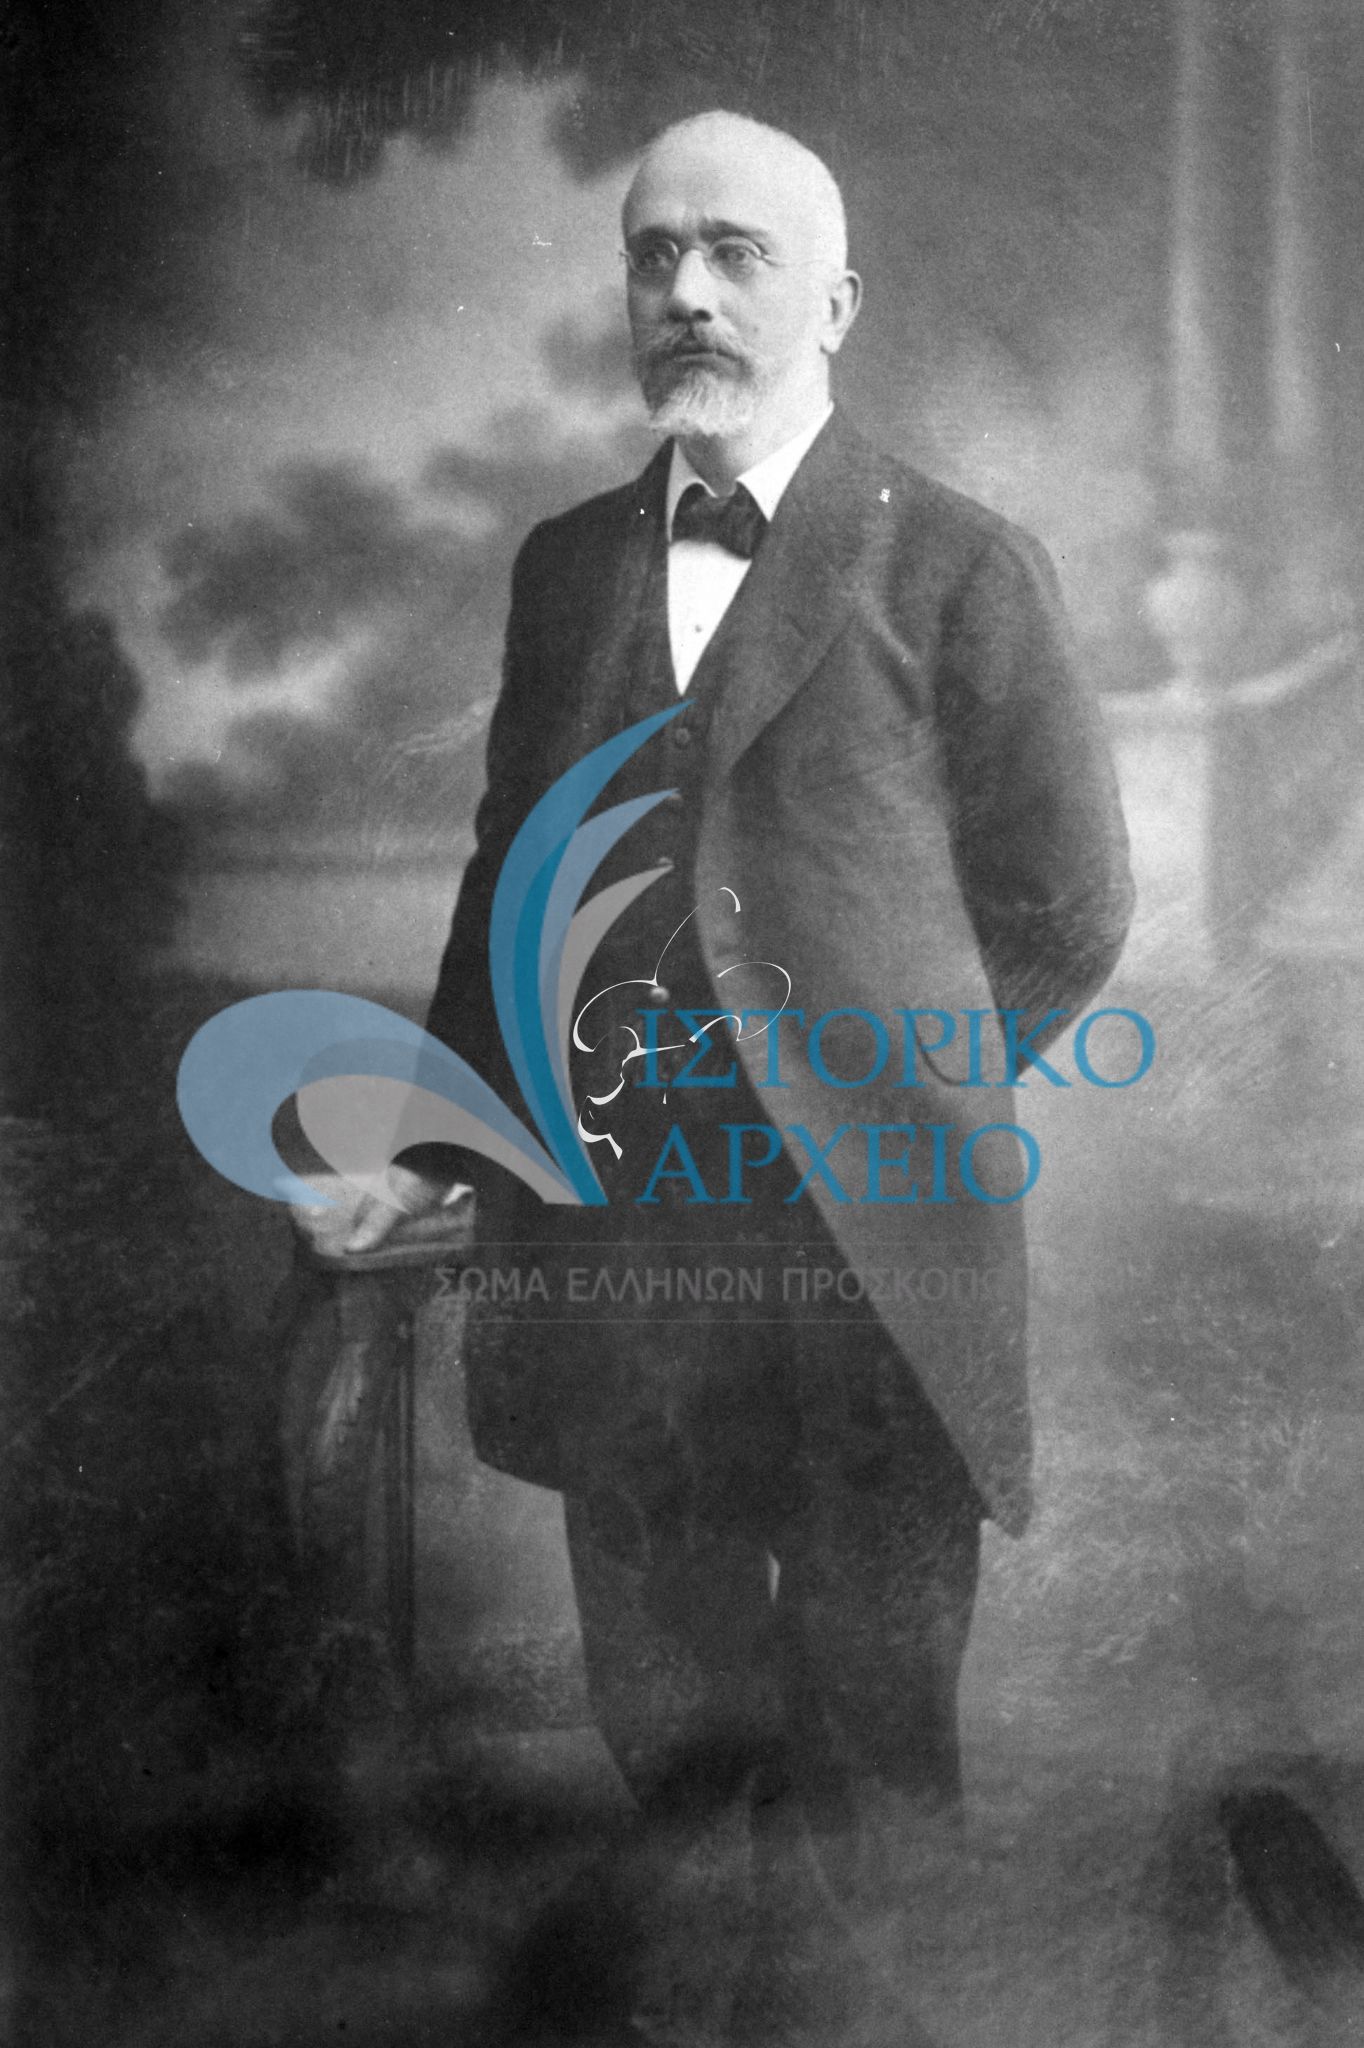 Η συγκεκριμένη φωτογραφία συνόδευσε την τρίτη δωρεά του πρωθυπουργού Ελευθερίου Βενιζέλου προς το Σώμα Ελλήνων Προσκόπων τον Απρίλιο του 1914. Στο κάτω μέρος της φωτογραφίας μαζί με την ιδιόχειρη υπογραφή του Ελ. Βενιζέλου έγγραψε: "Εις του Προσκόπους "Αιέν Αριστεύειν". Έκτοτε η προτροπή τού καθιερώθηκε να συνοδεύει μαζί με το "Έσο έτοιμος" το Ελληνικό Προσκοπικό Έμβλημα.